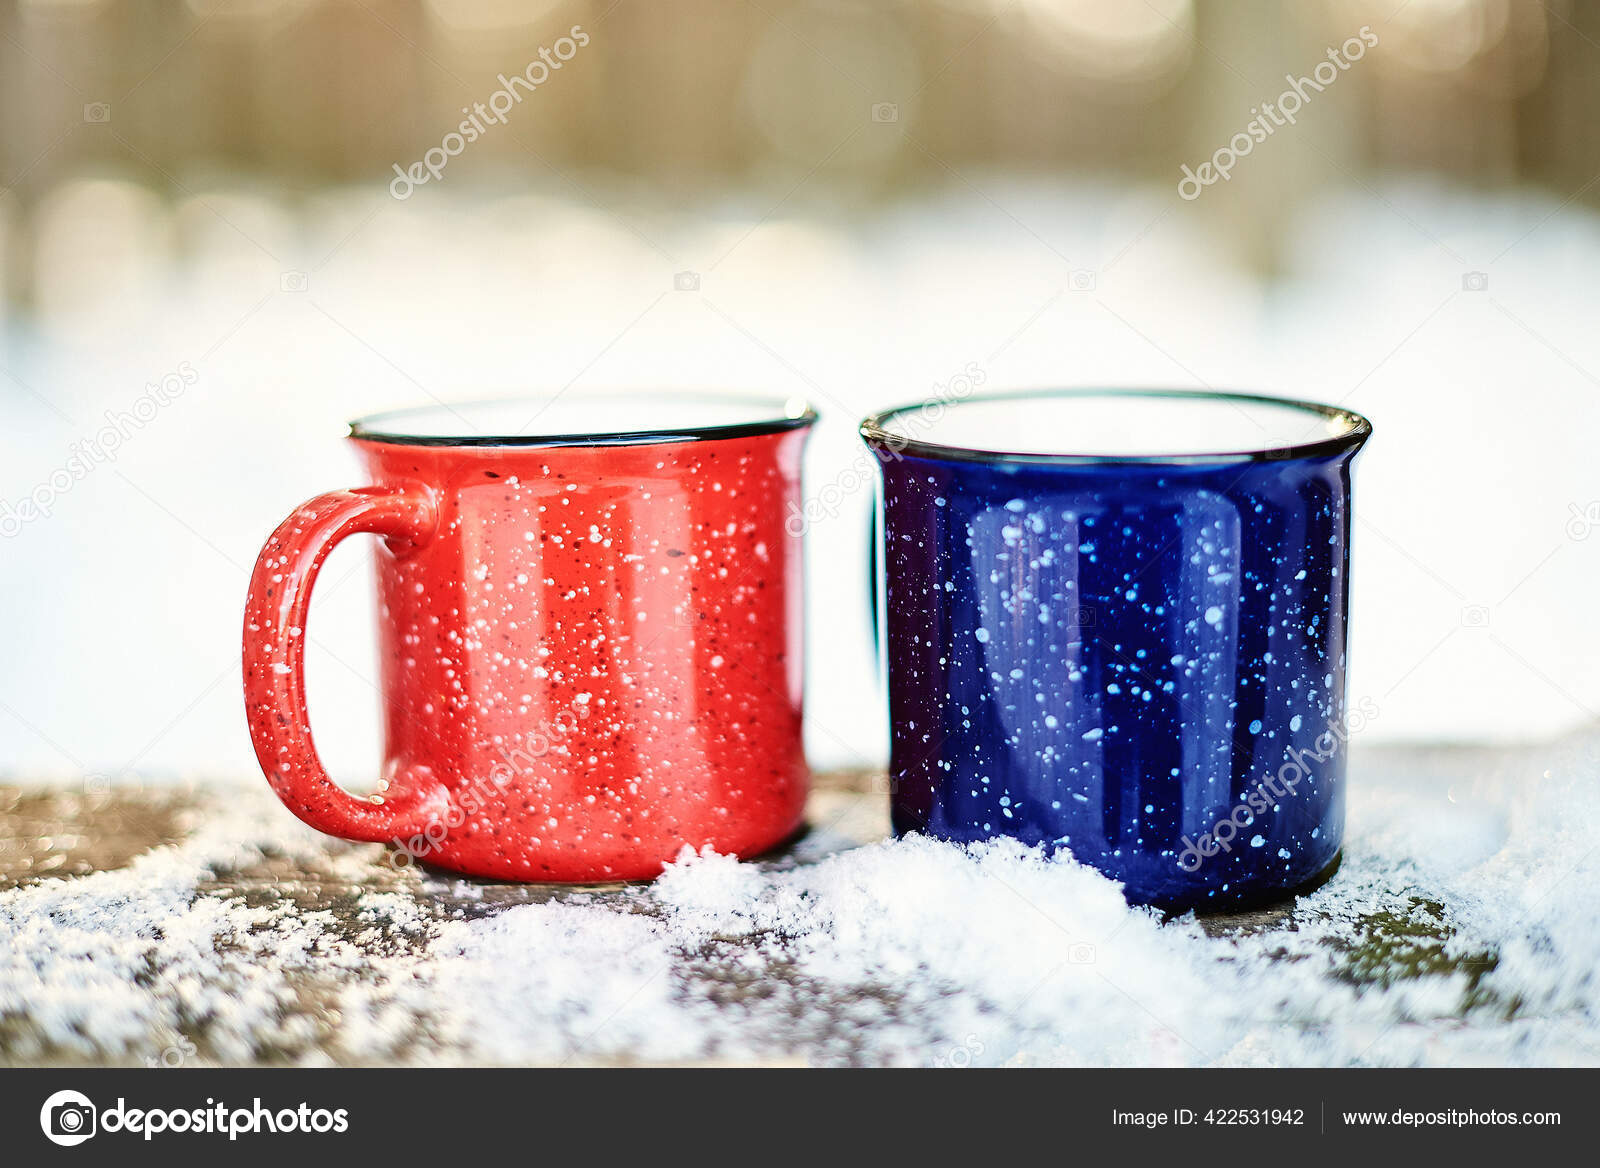 https://st2.depositphotos.com/17877862/42253/i/1600/depositphotos_422531942-stock-photo-bright-red-blue-mugs-hot.jpg